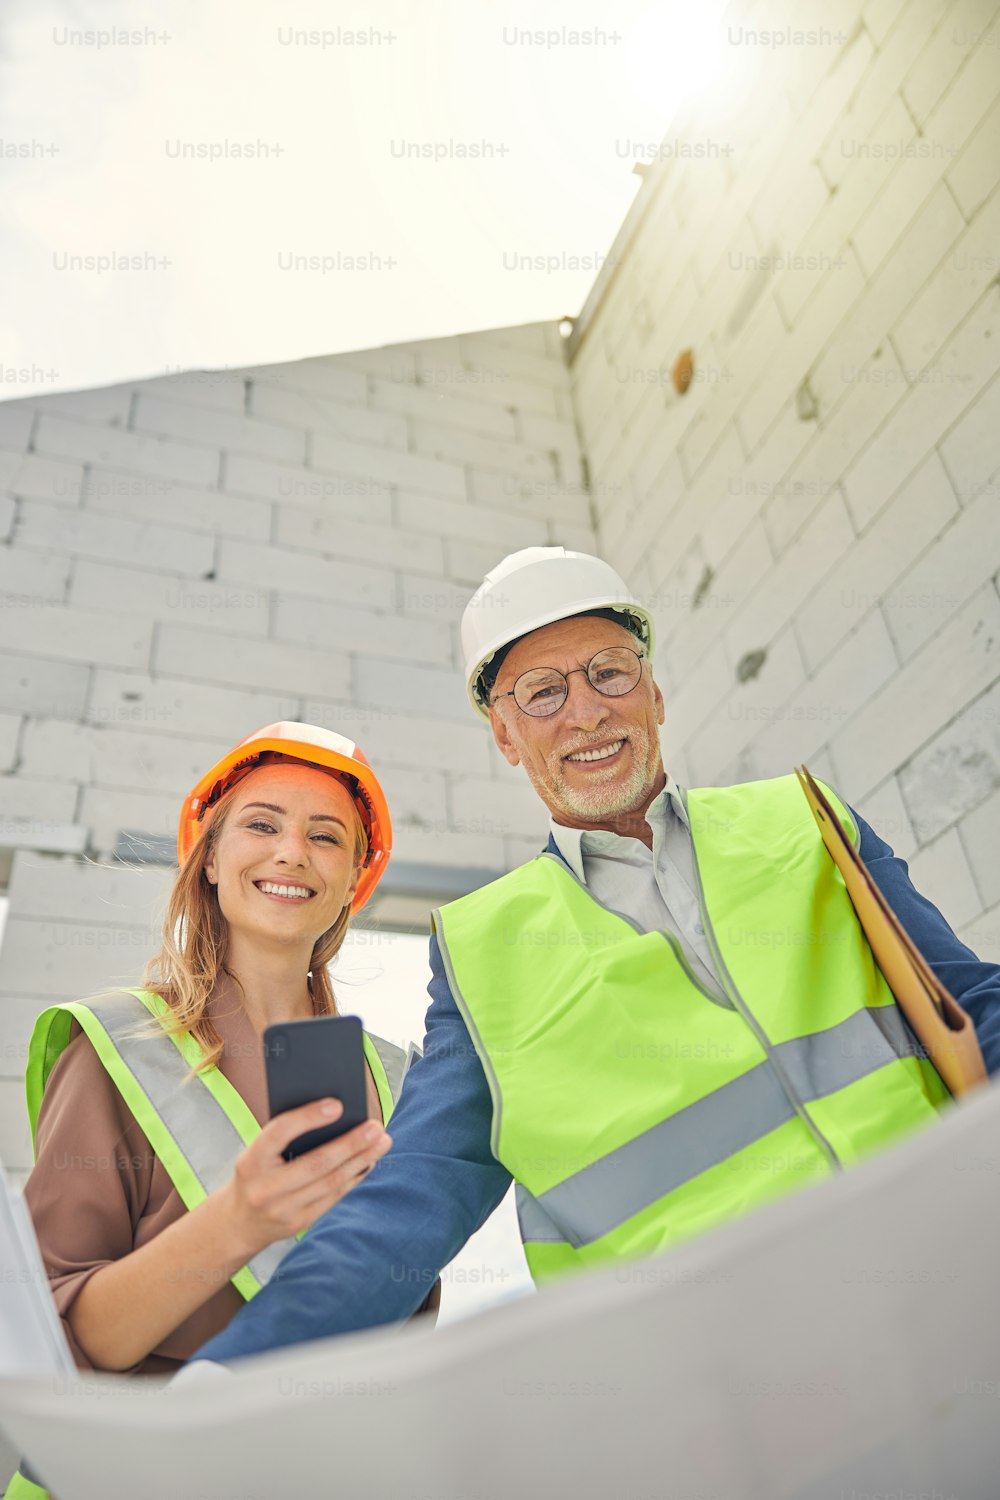 Niedriger Winkel einer lächelnden Frau mit Smartphone, die neben einem Bauingenieur steht